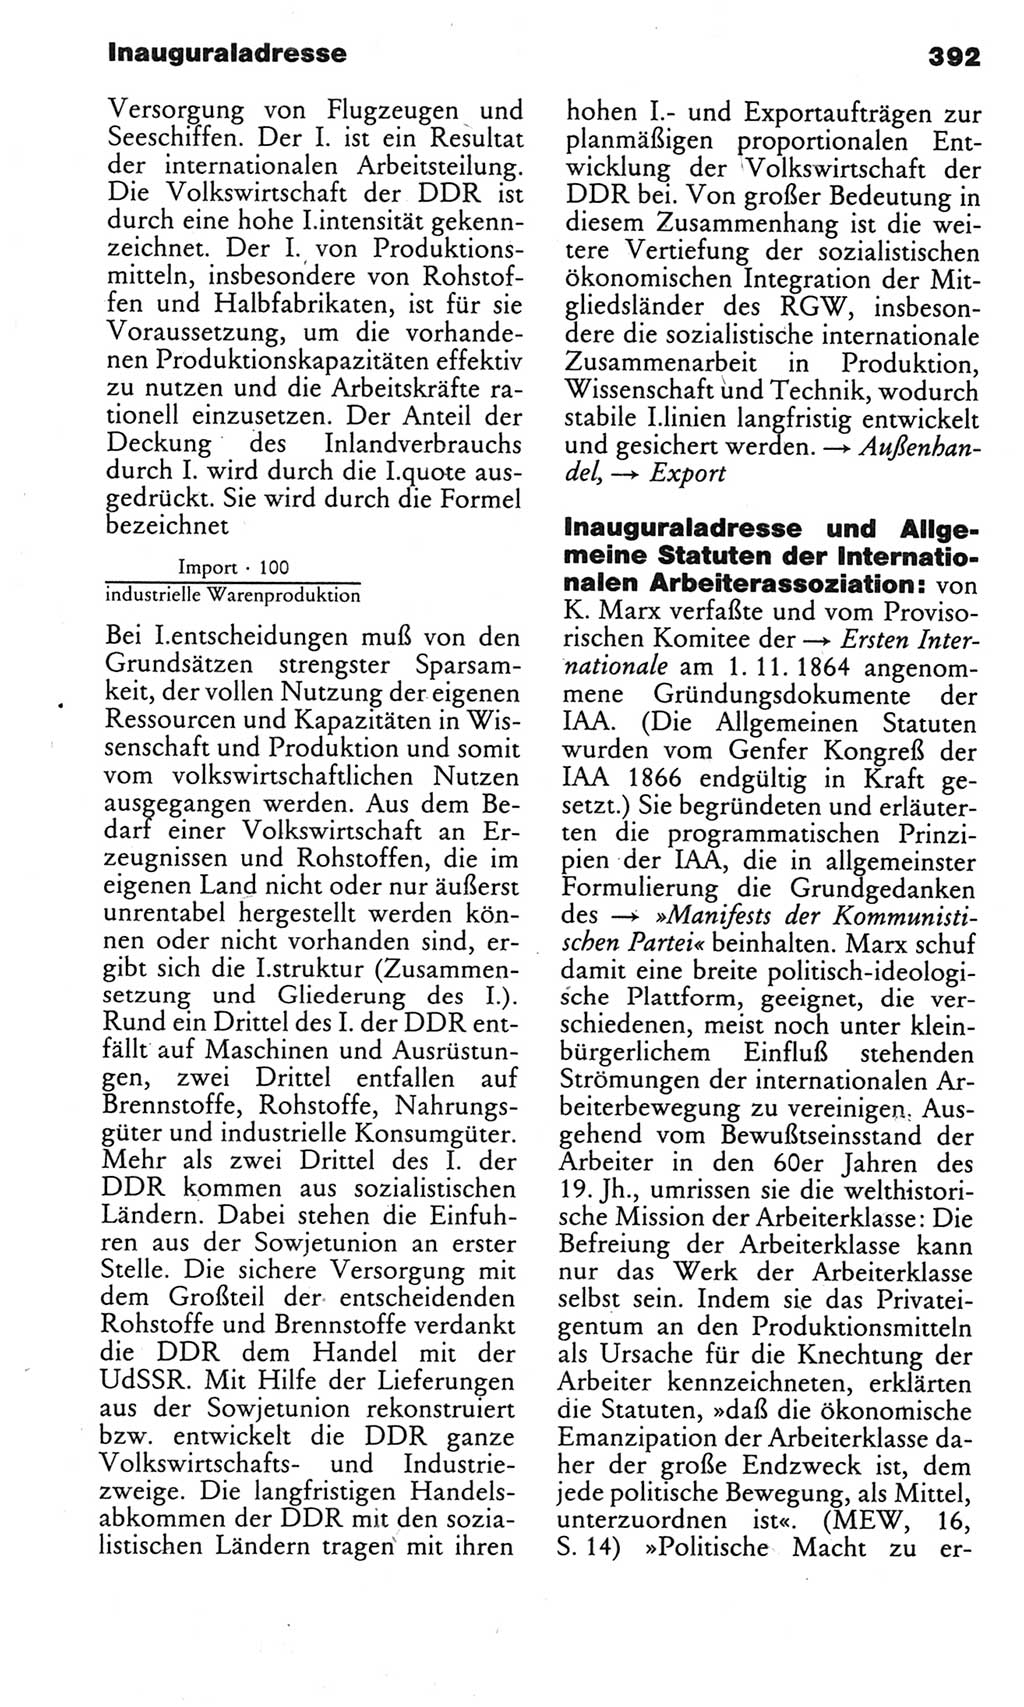 Kleines politisches Wörterbuch [Deutsche Demokratische Republik (DDR)] 1983, Seite 392 (Kl. pol. Wb. DDR 1983, S. 392)